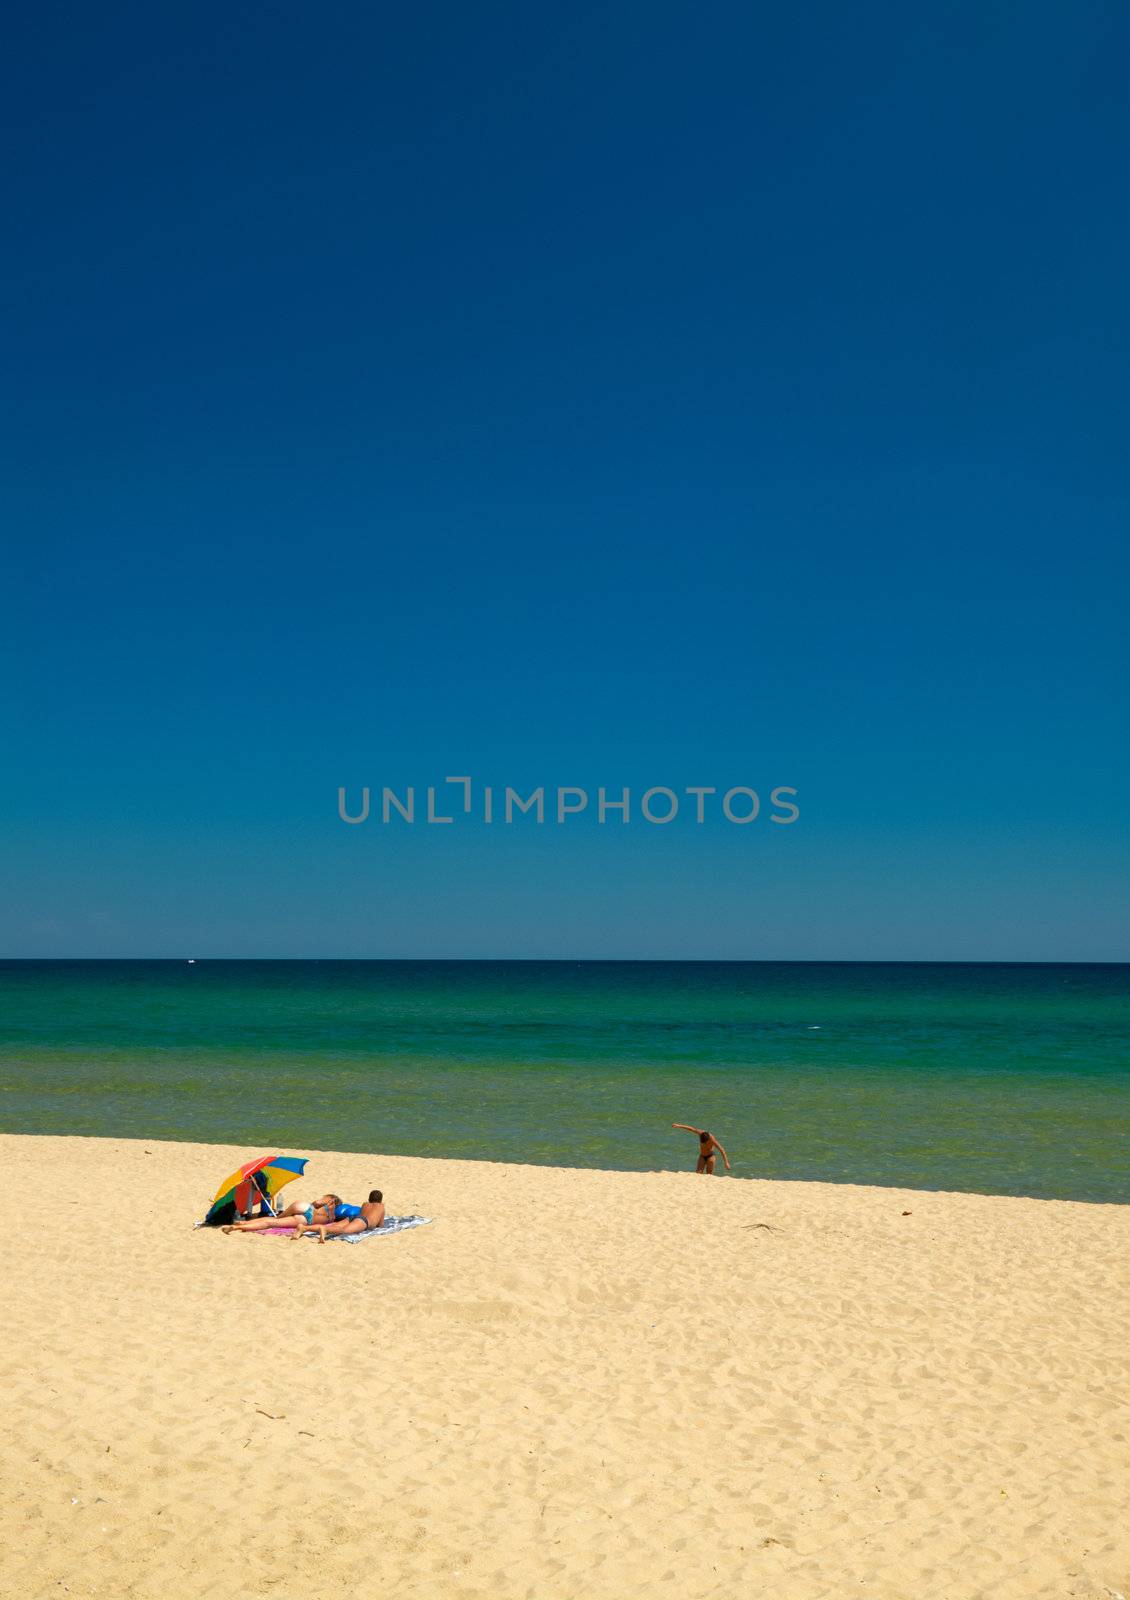 A couple taking sunbath on a beach at the Black sea coast, Bulgaria